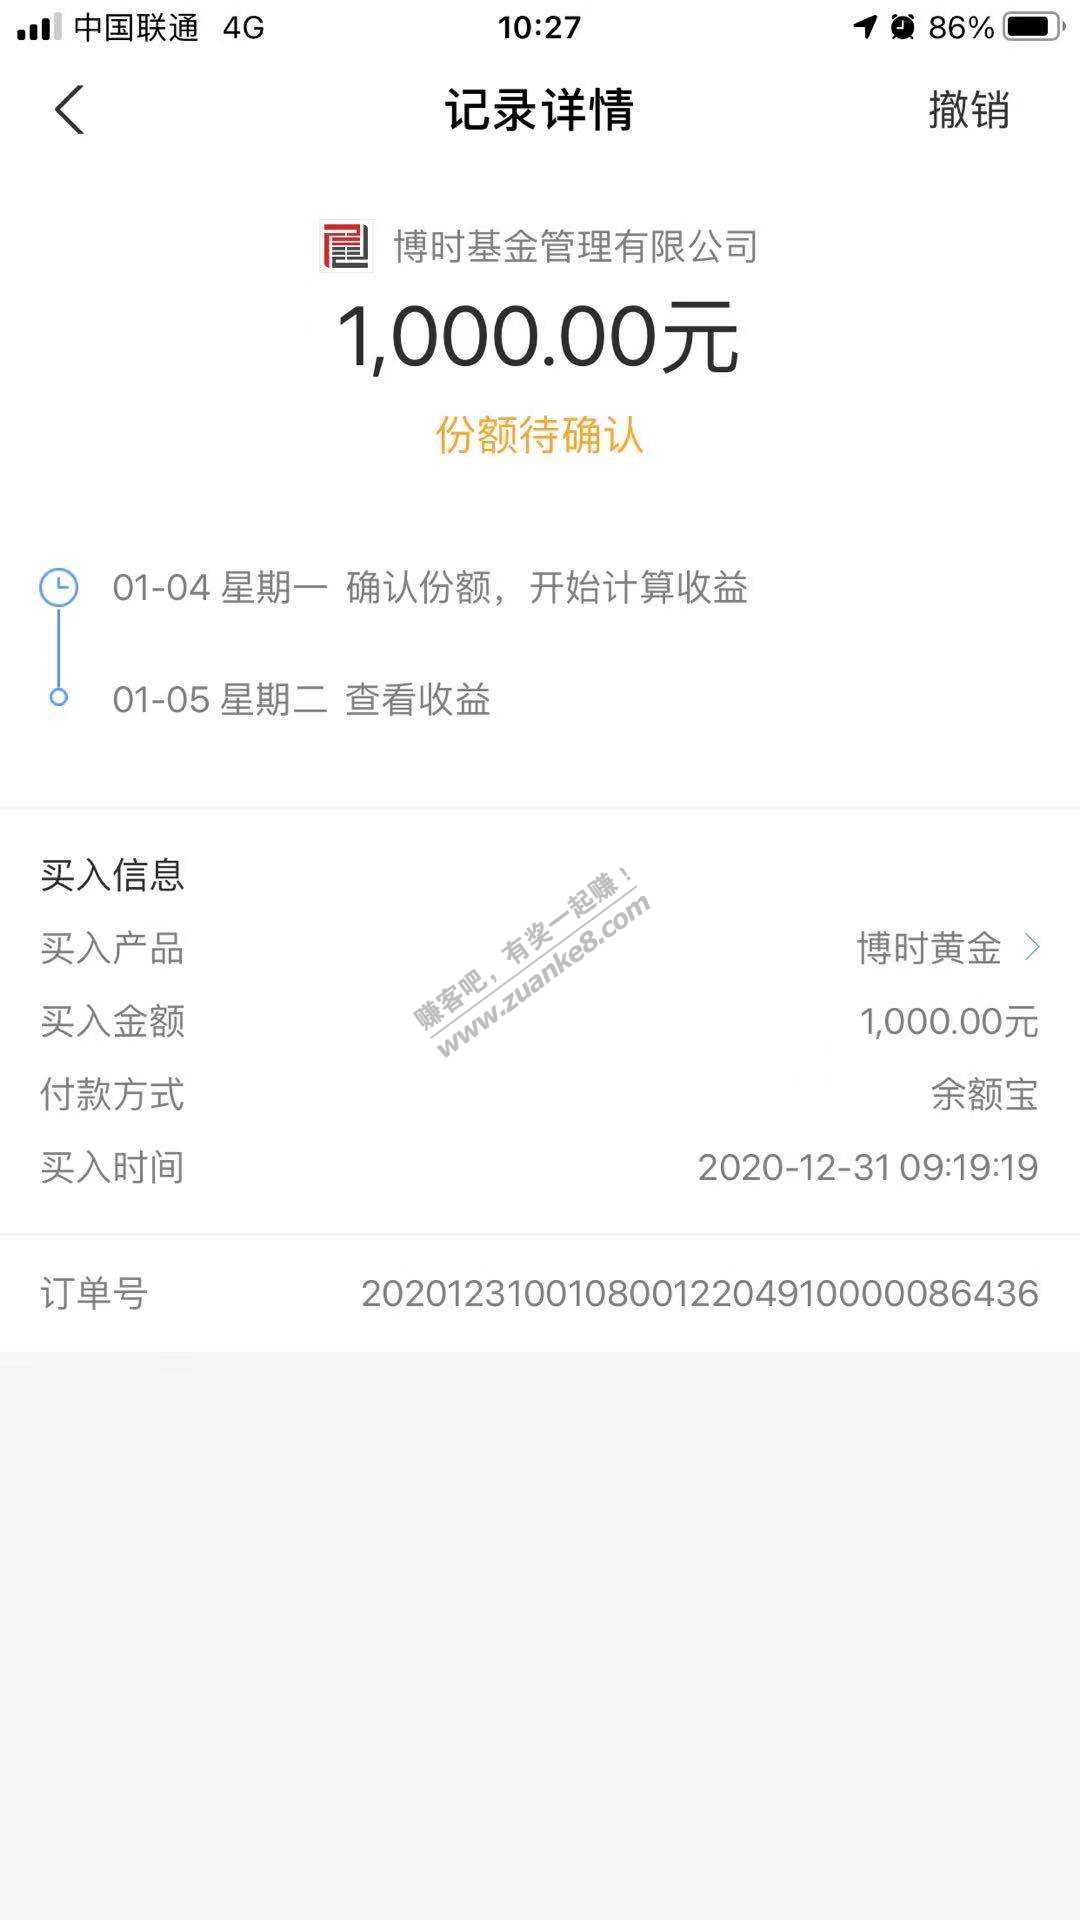 2020.12.31基金定投-惠小助(52huixz.com)